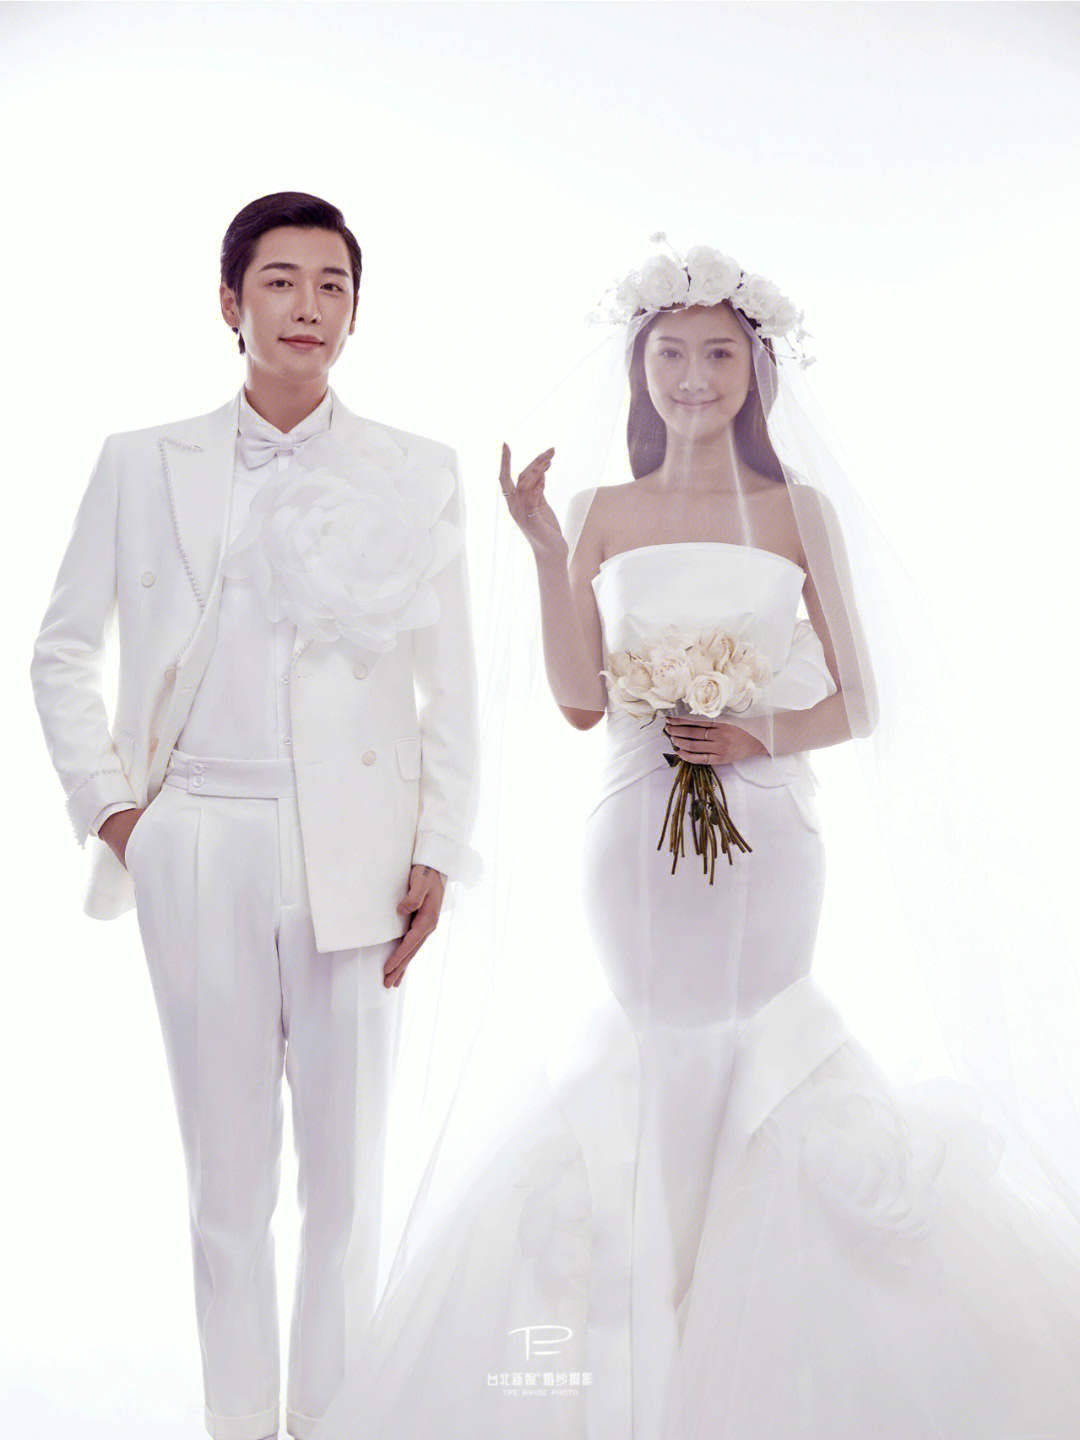 但很出众出品:台北新娘婚纱摄影拍摄地:宜宾极简纯白的画面配色与风格